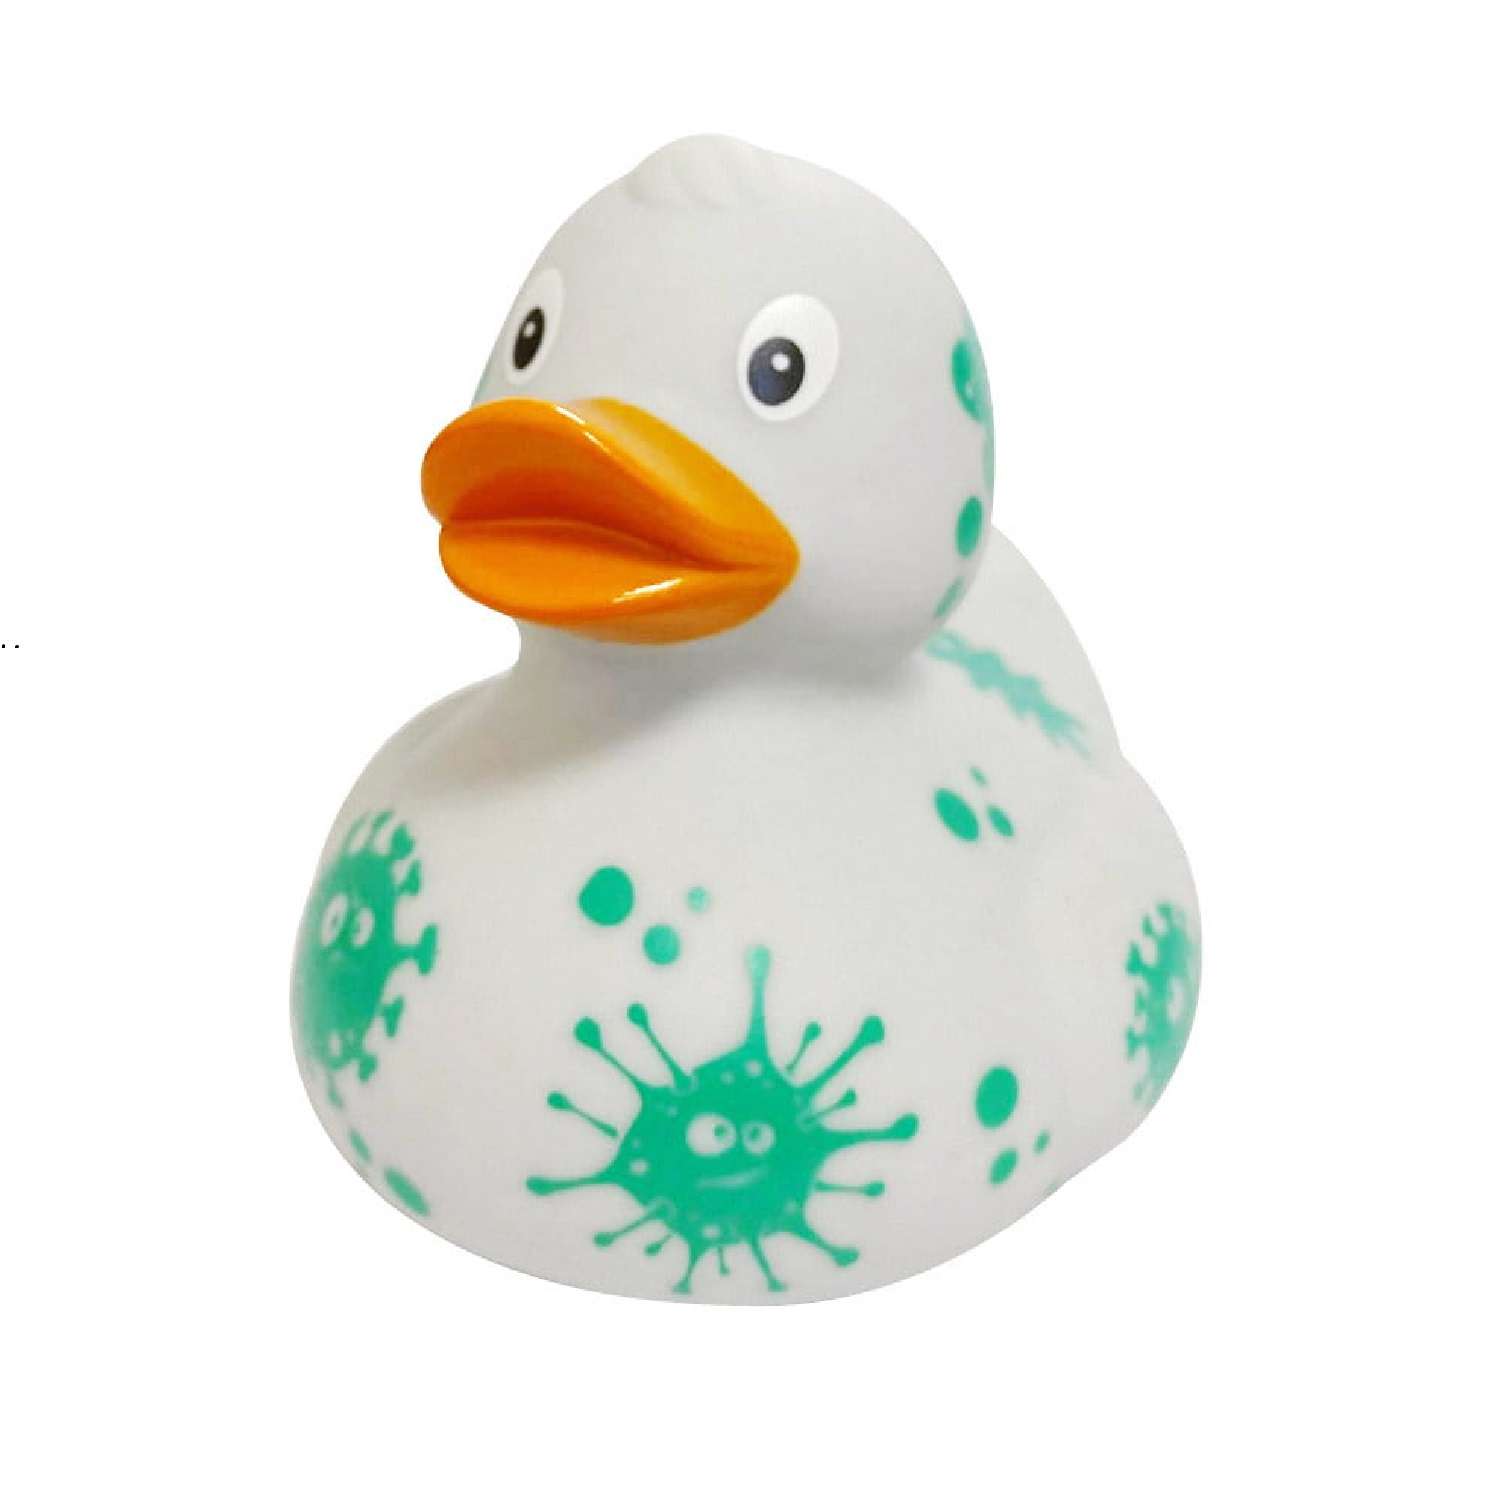 Игрушка Funny ducks для ванной Вирус уточка 1308 - фото 1